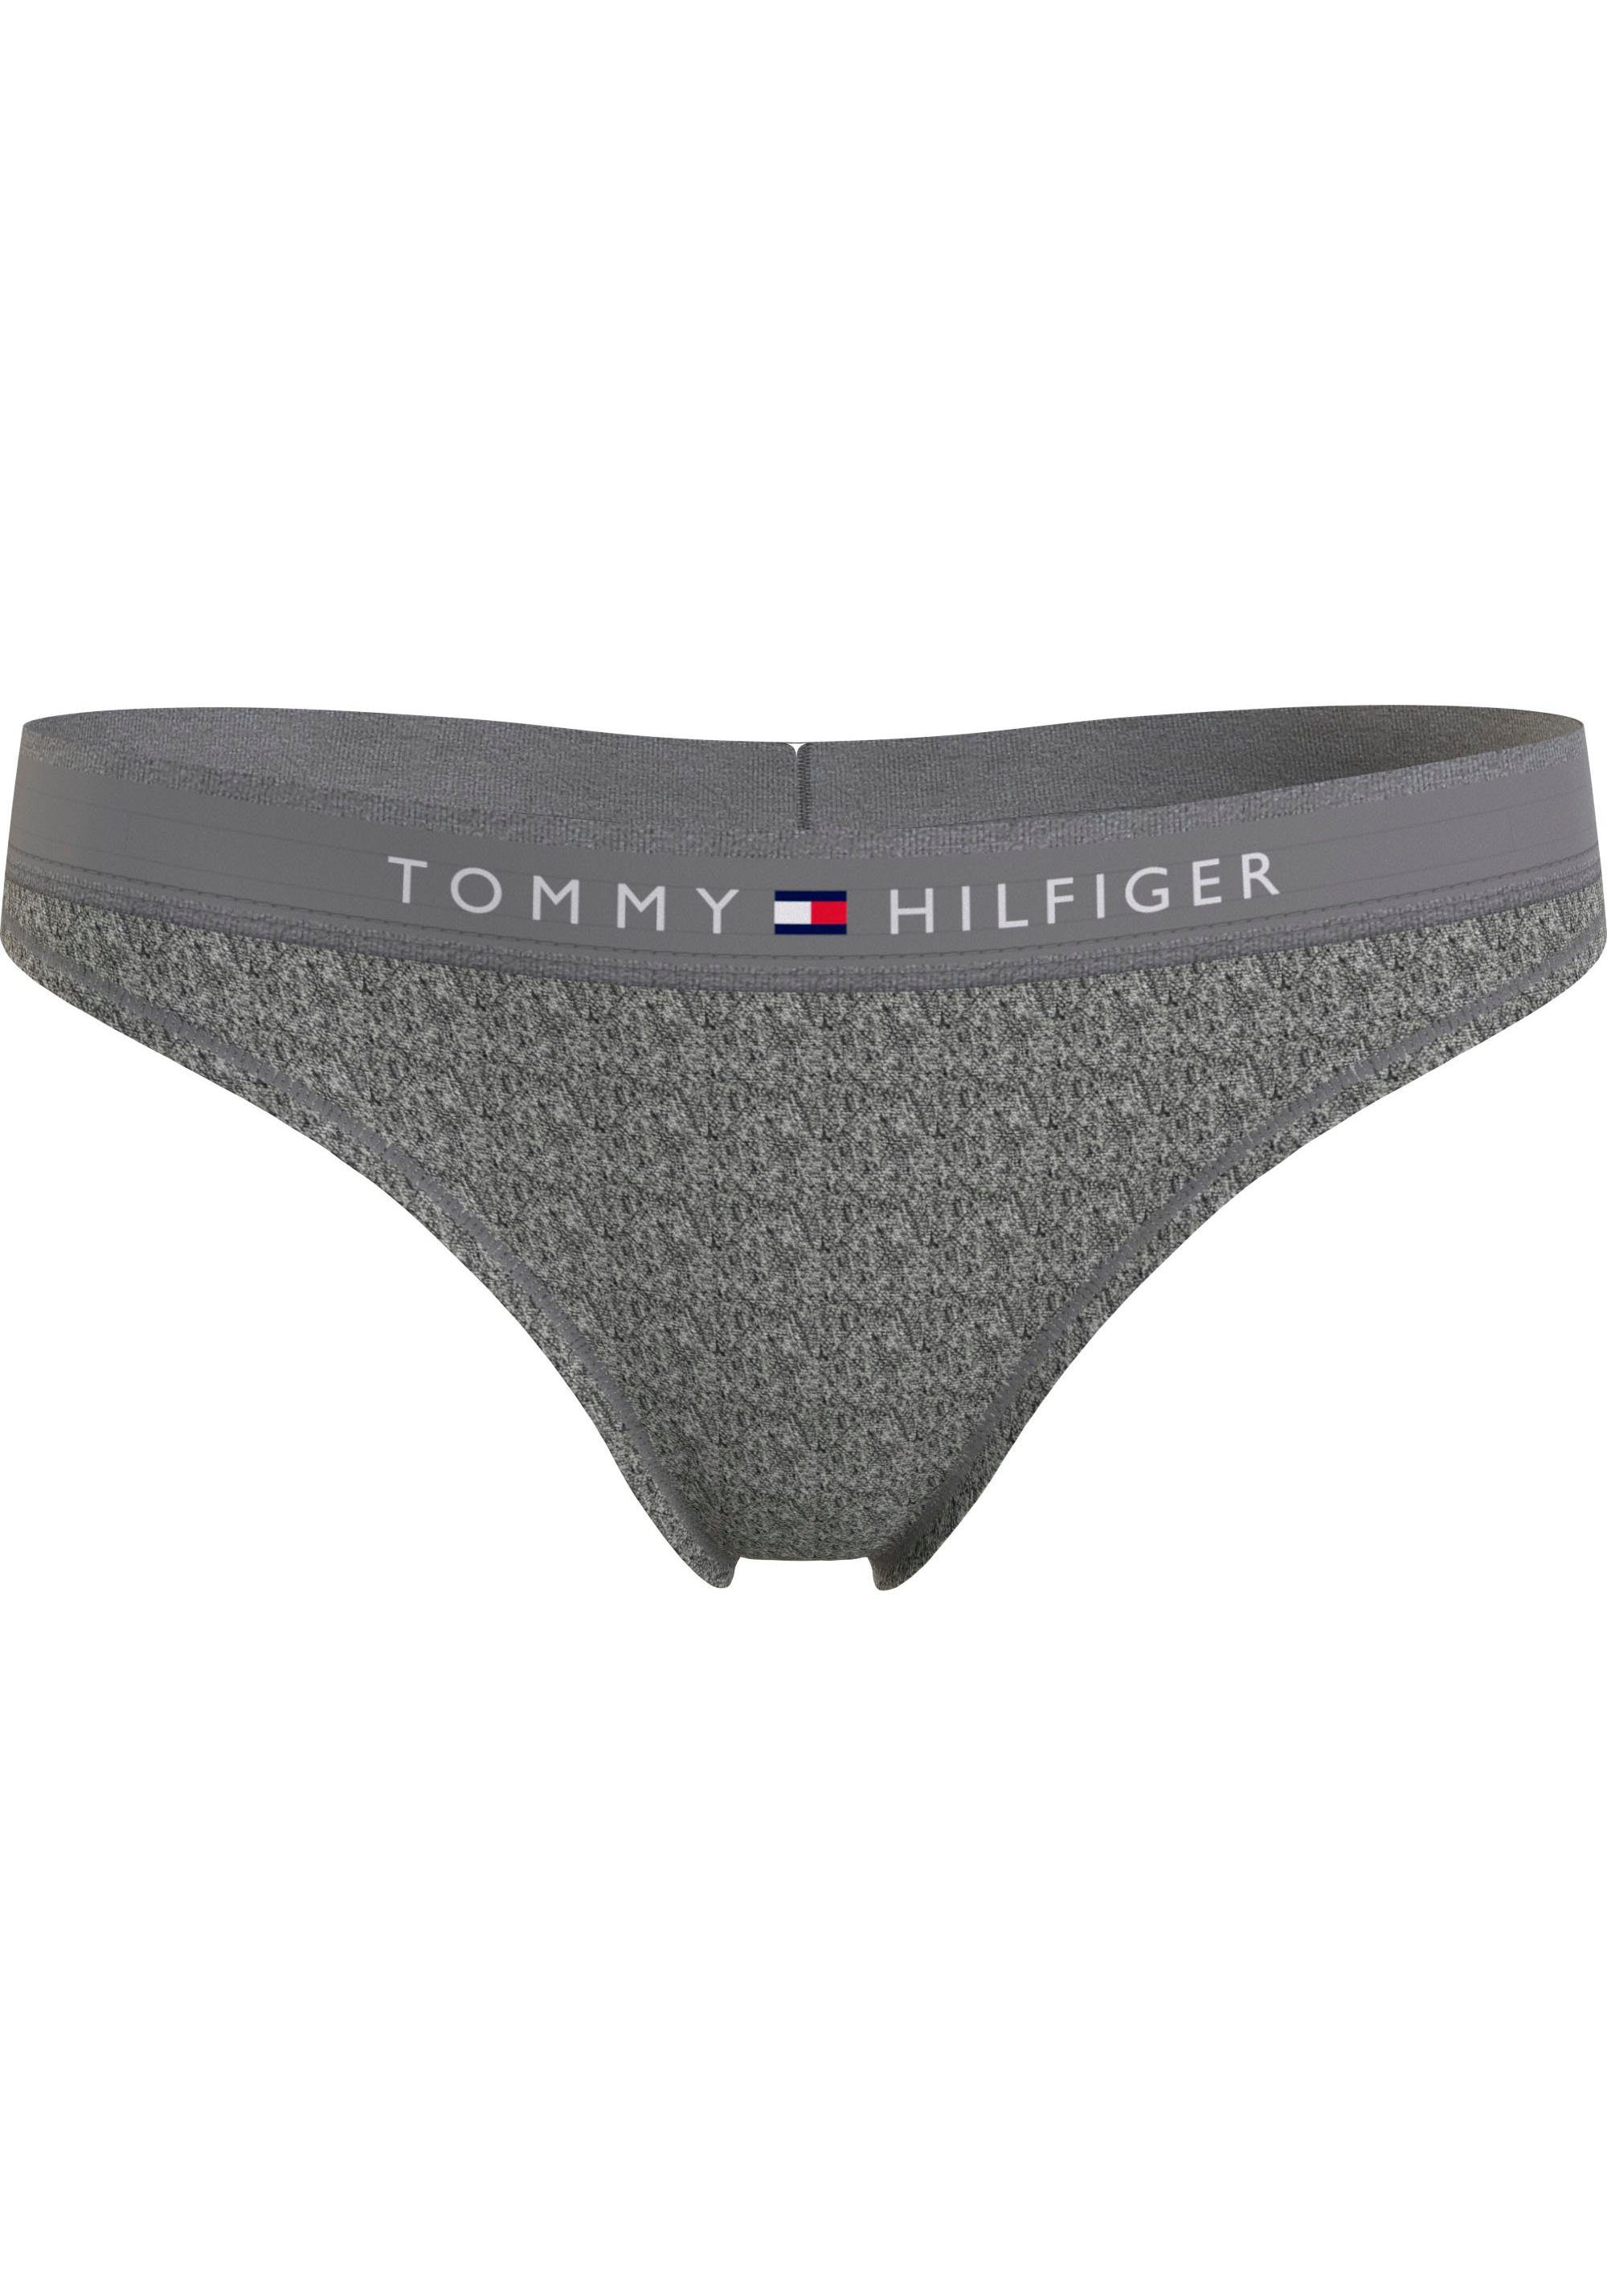 Tommy Hilfiger Underwear T-String THONG (EXT SIZES) mit Tommy Hilfiger Logobund Dark_Grey_Ht